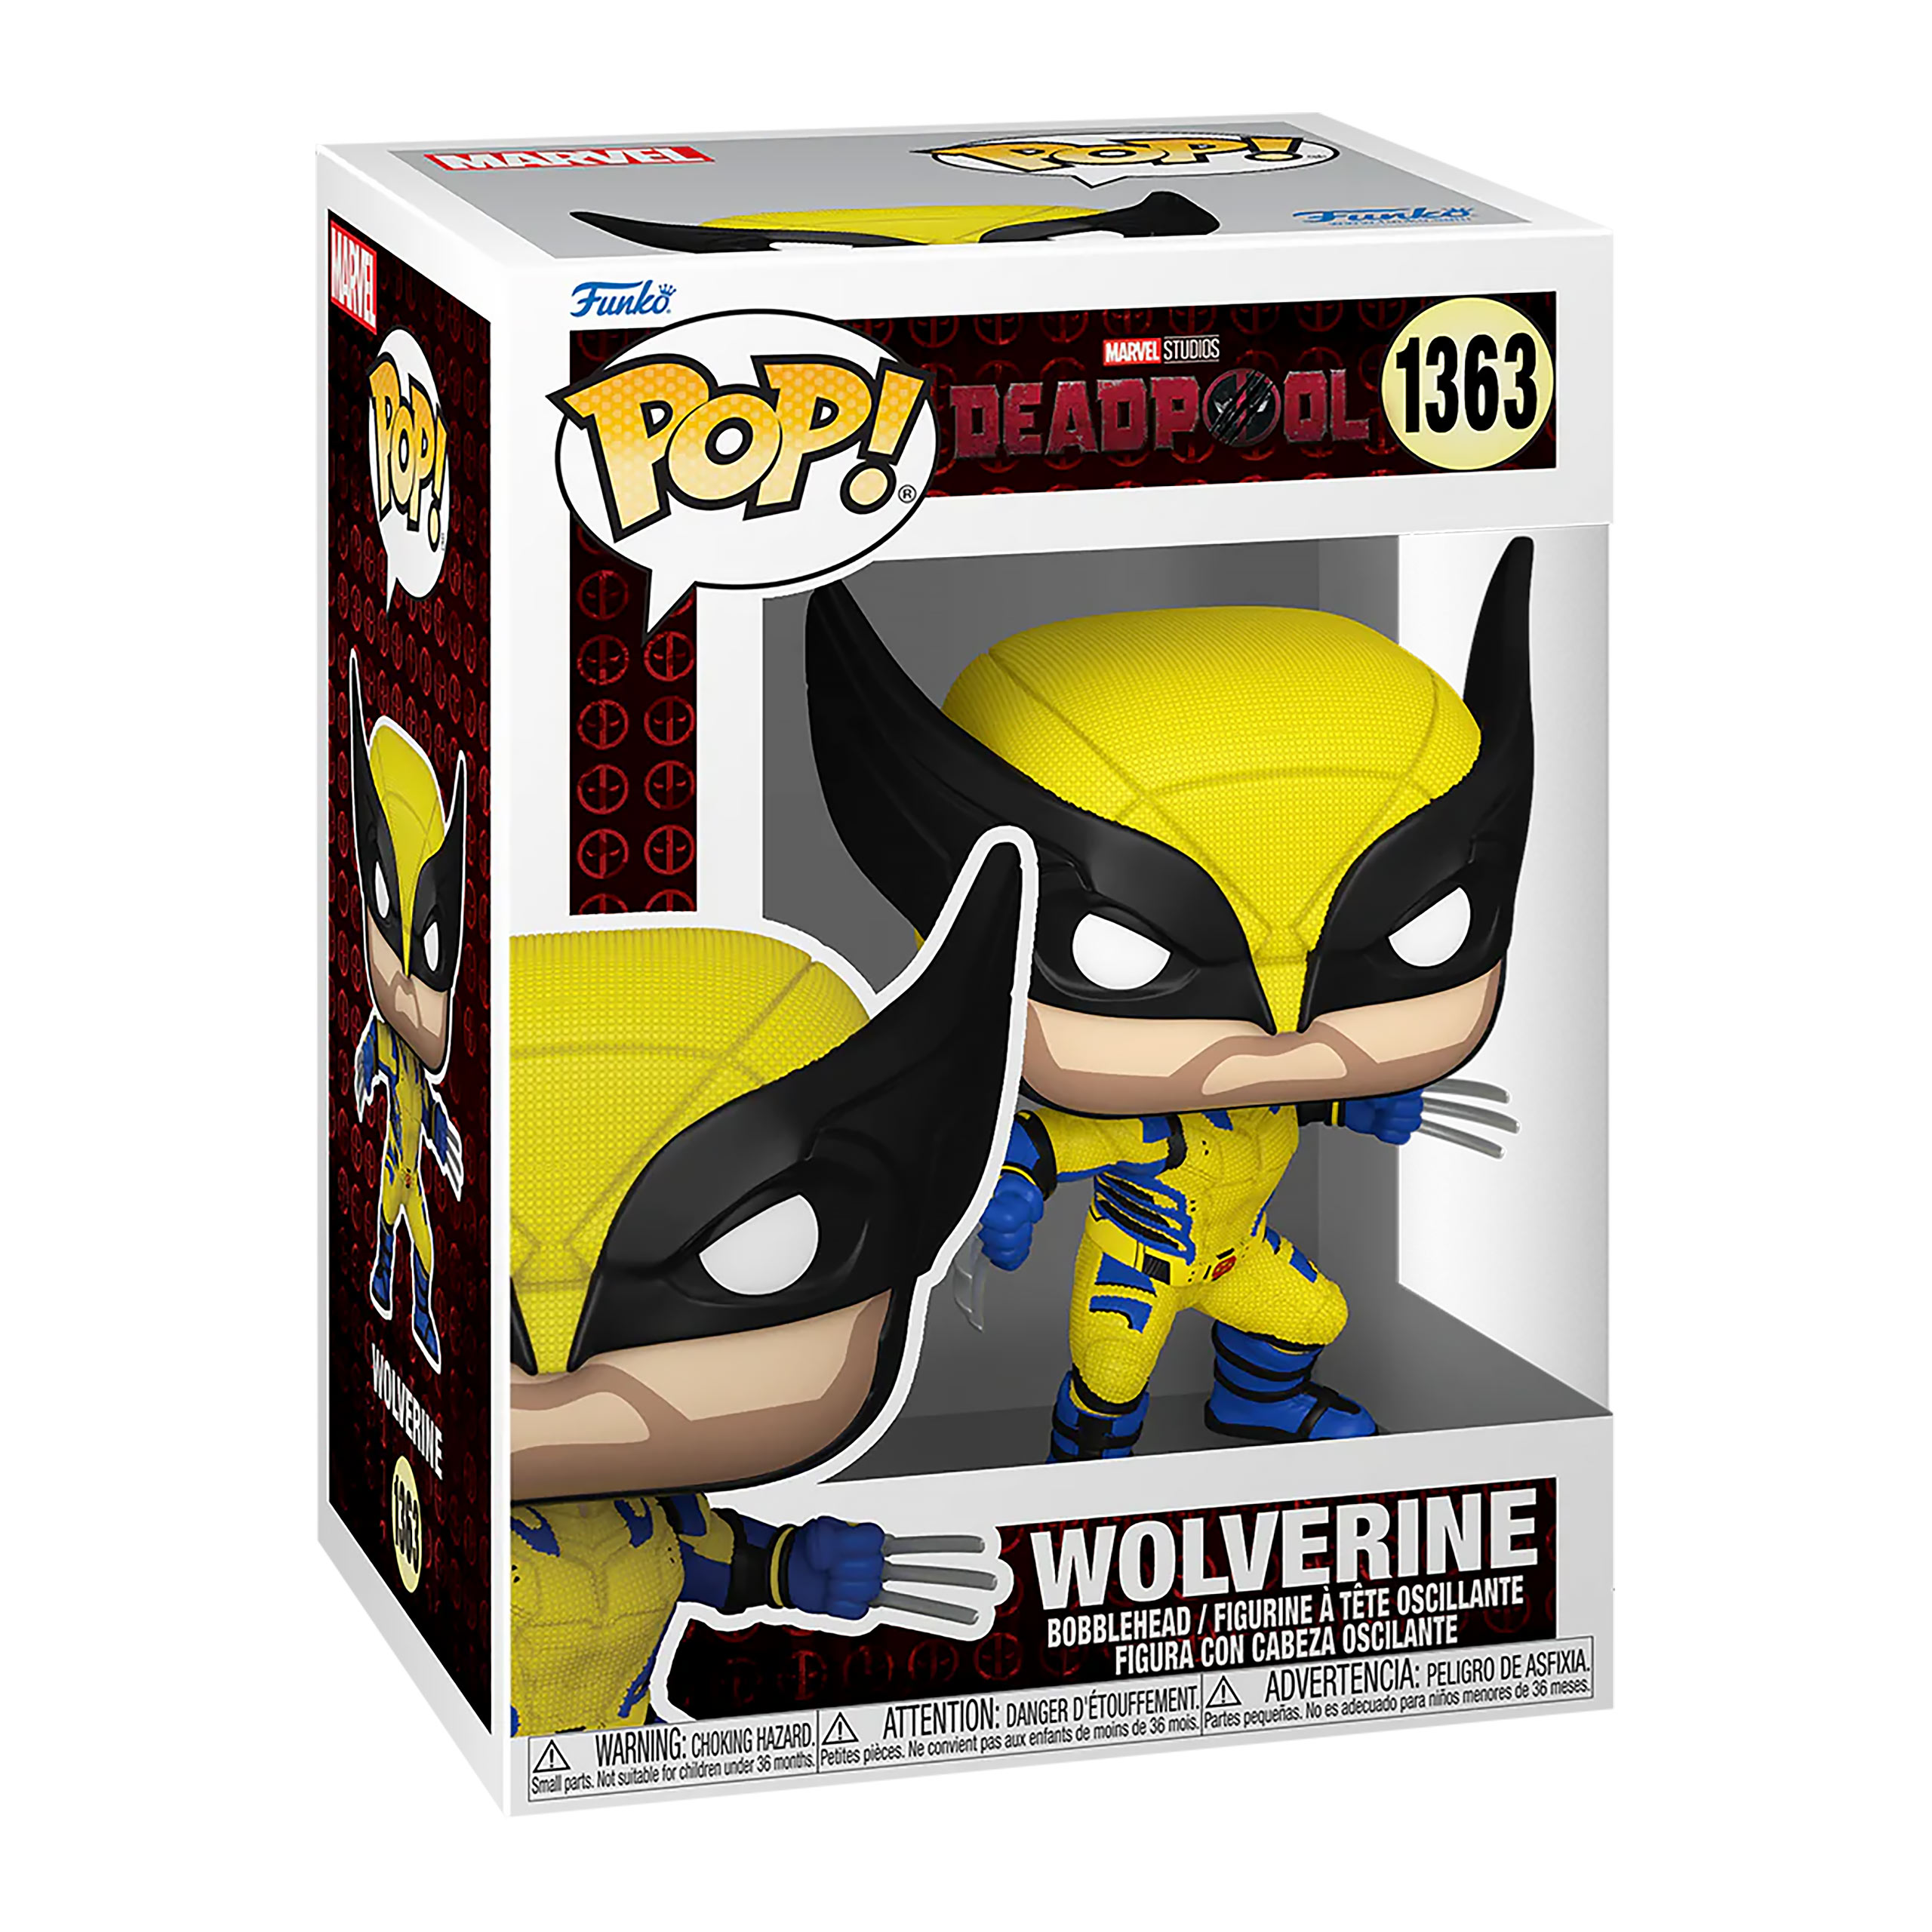 Deadpool 3 - Wolverine Funko Pop Bobblehead Figure